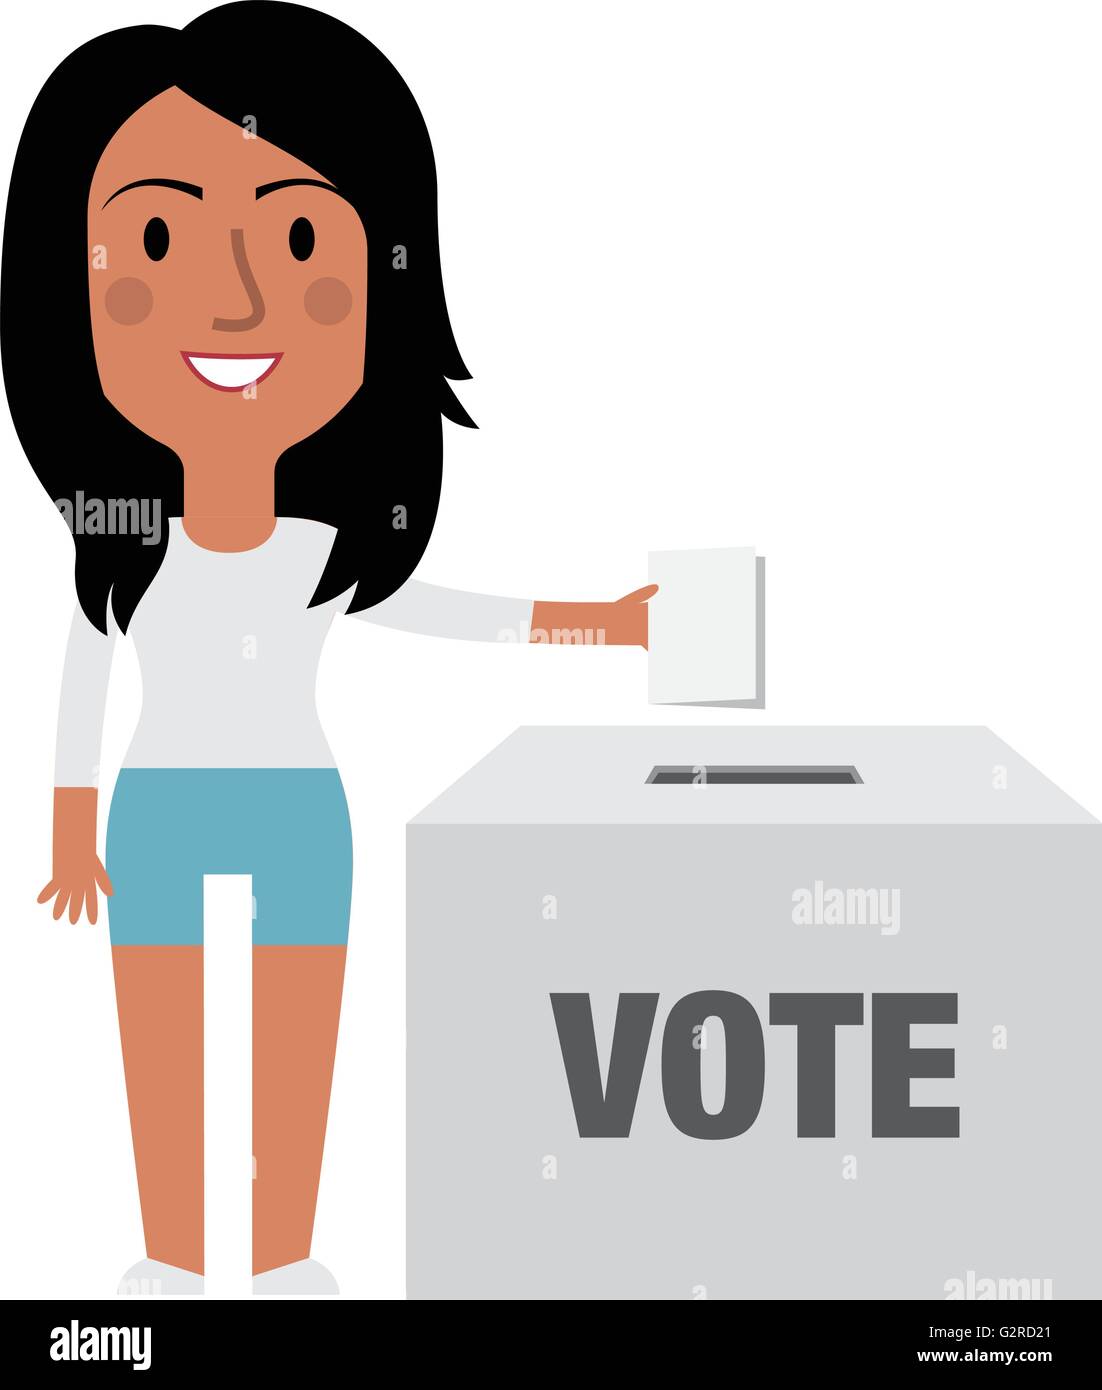 Illustrazione del personaggio femminile mettendo votare nelle urne Illustrazione Vettoriale